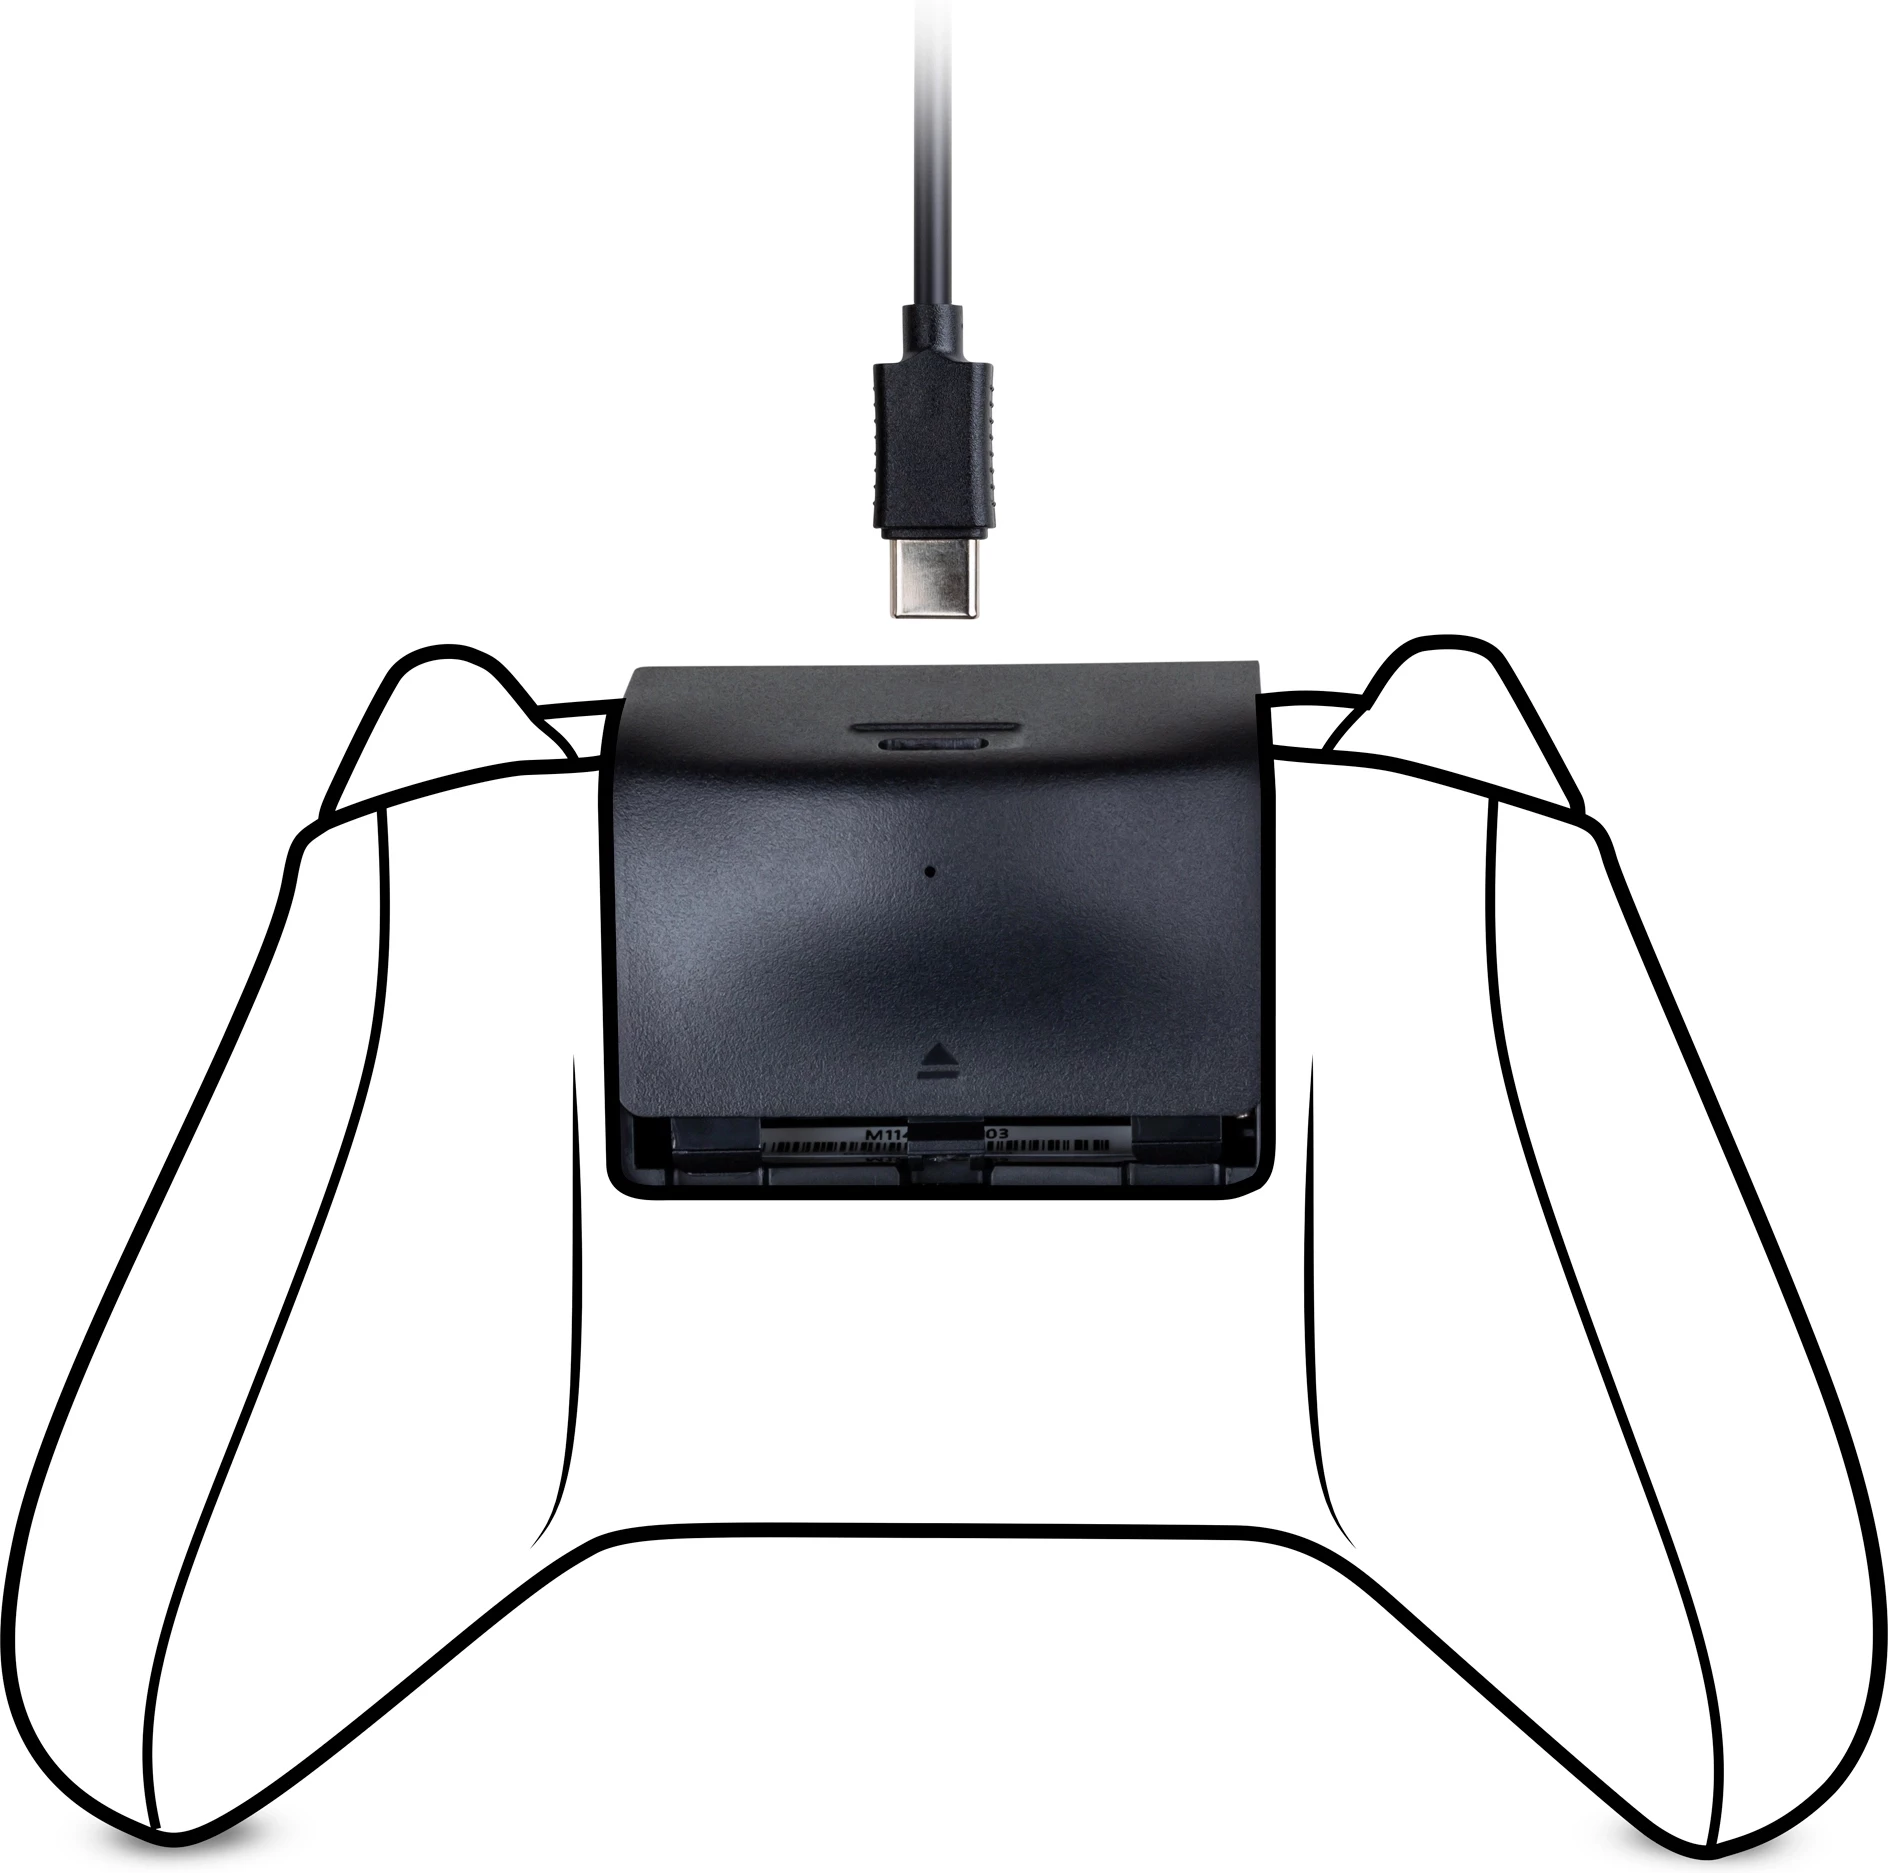 Bigben Battery Pack + Charging Cable voor de Xbox Series S/X kopen op nedgame.nl